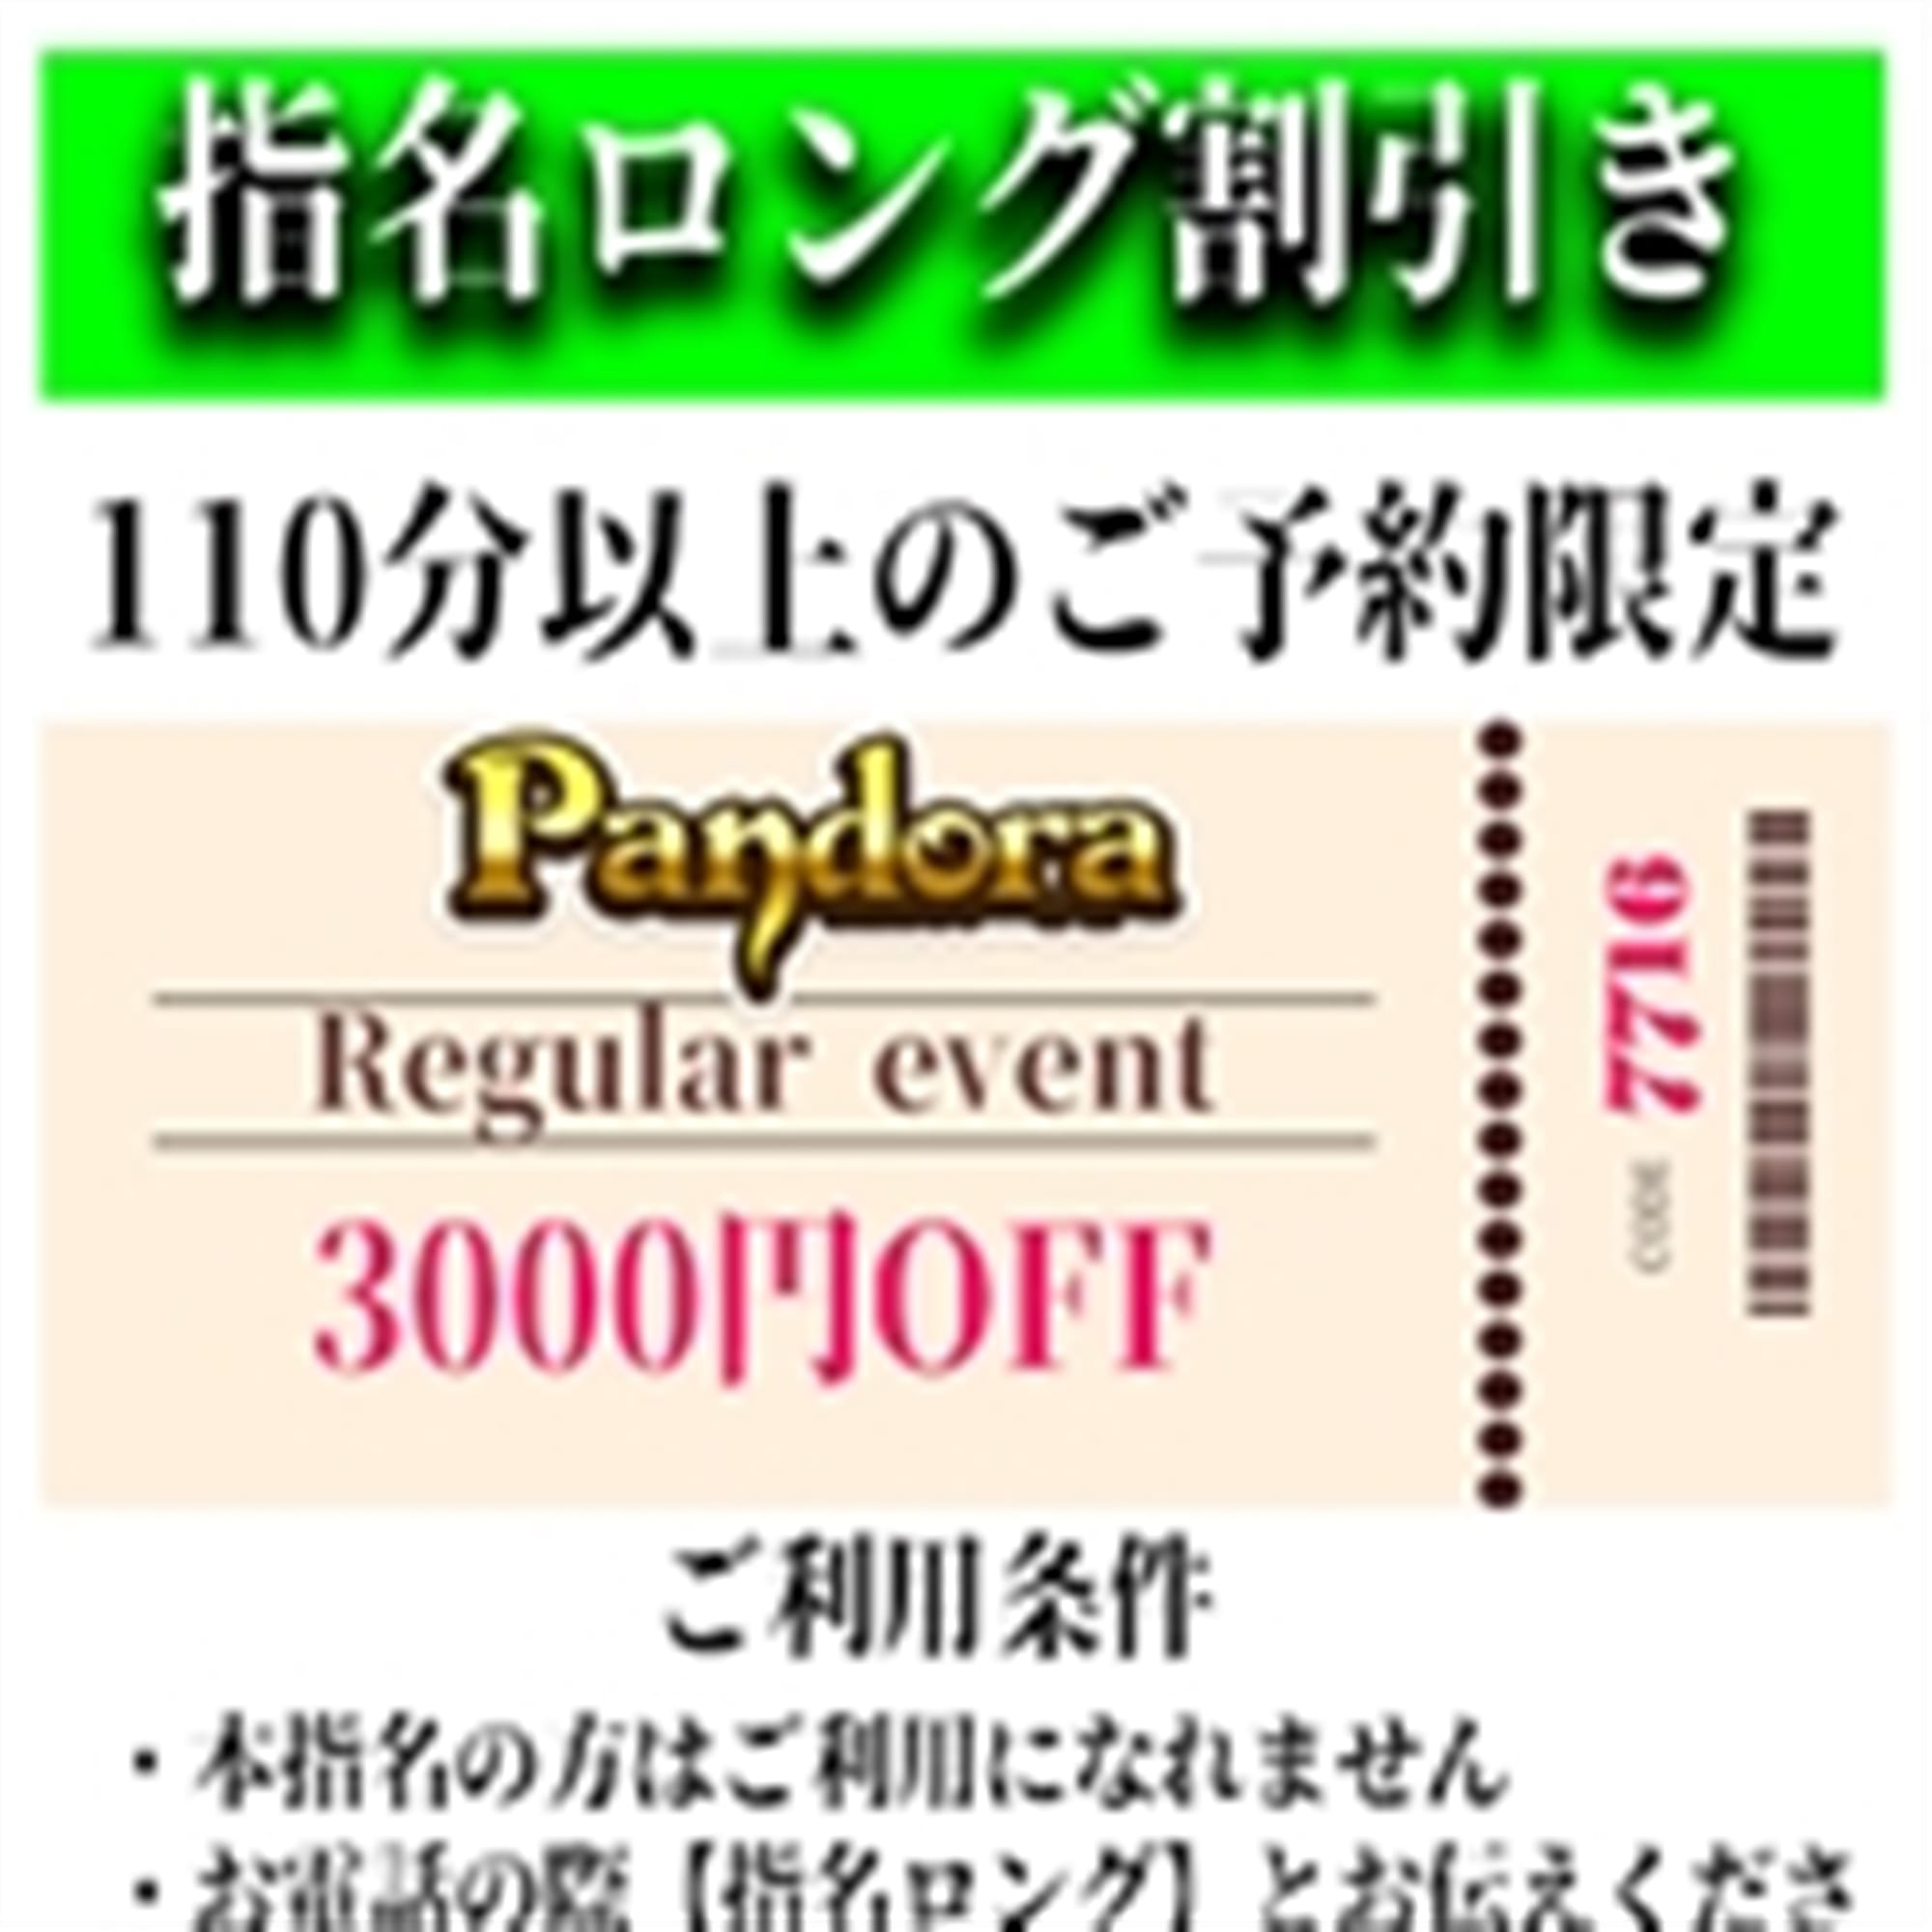 「ご指名のお客様も遊べるロングコース割引」03/28(木) 18:21 | Pandora(パンドラ)新潟のお得なニュース